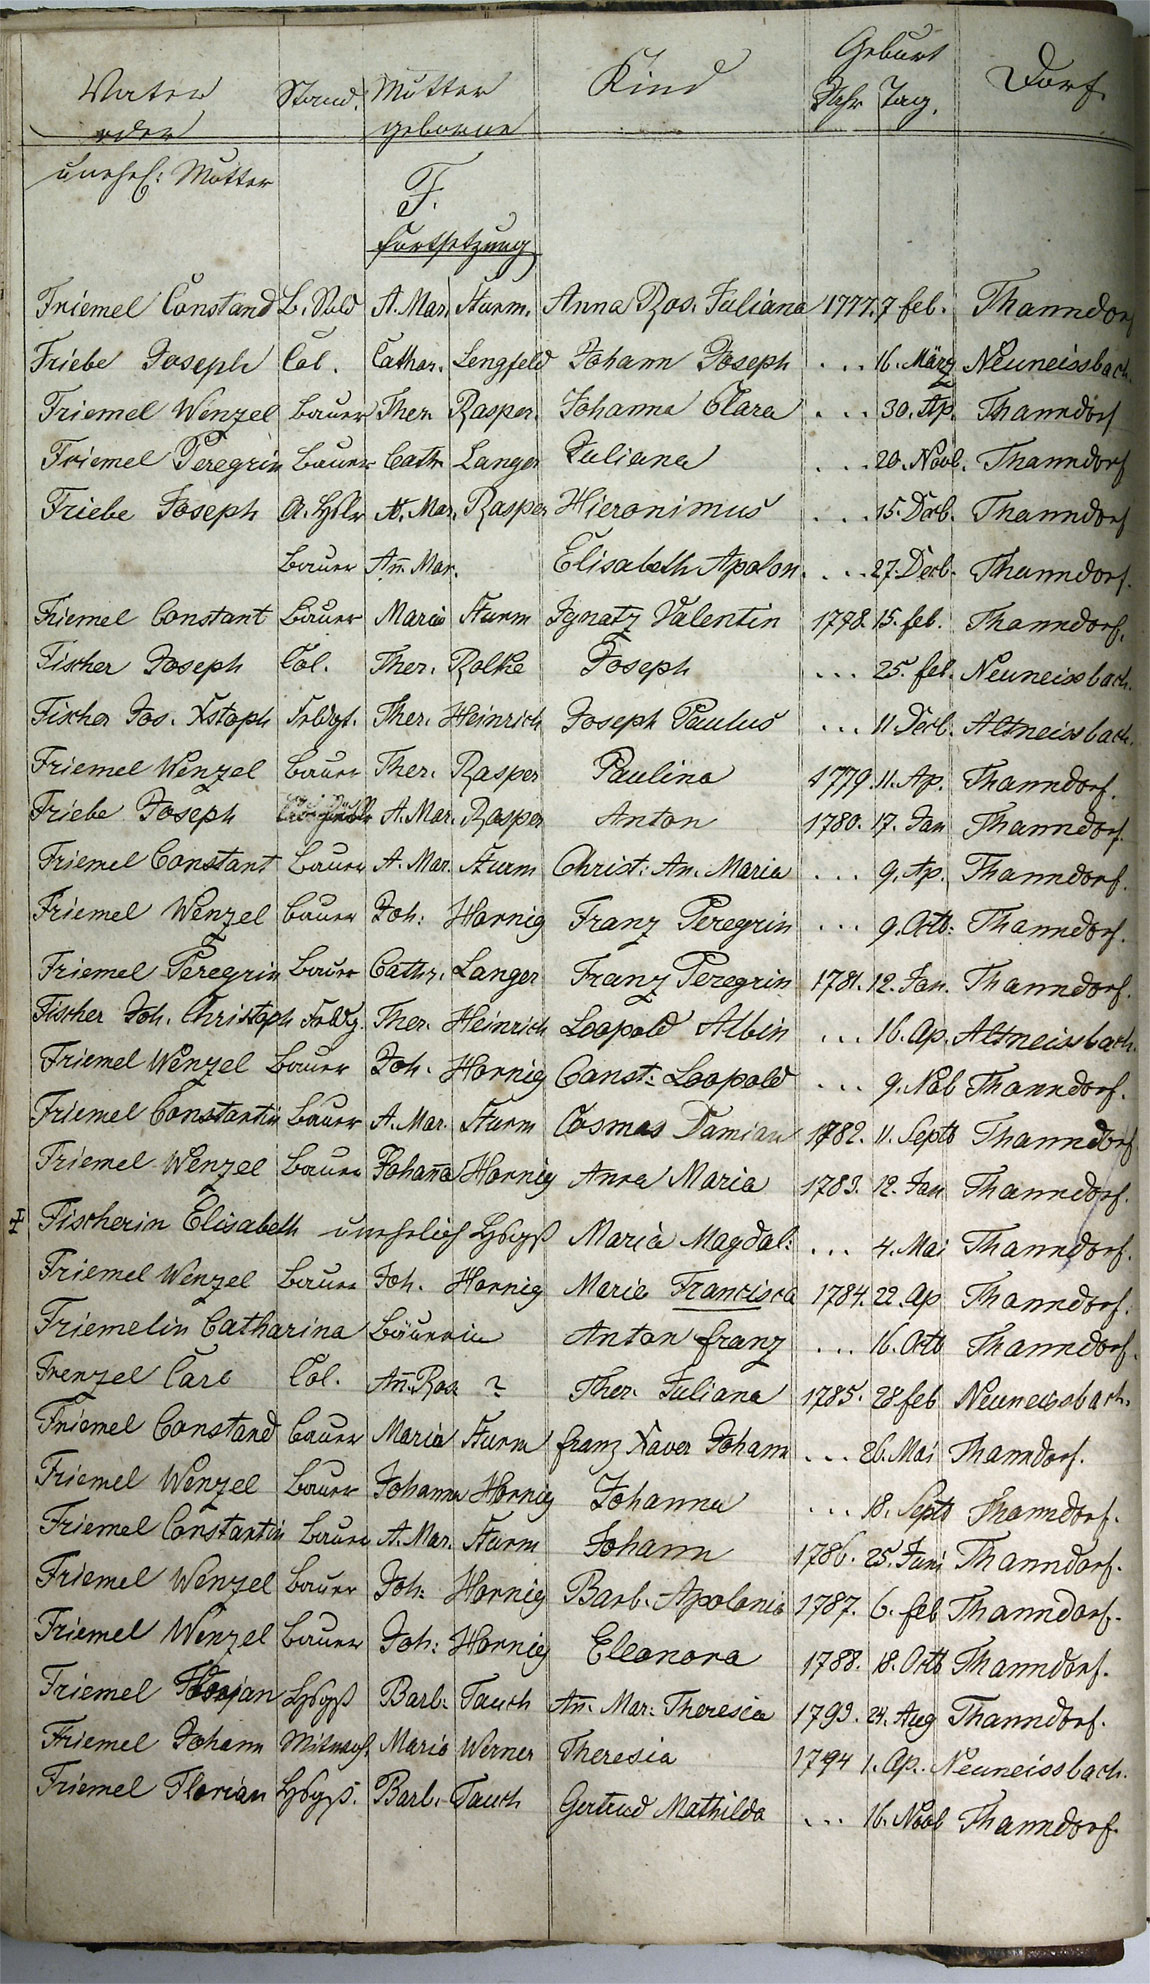 Taufregister 1770 - 1889 Seite 24